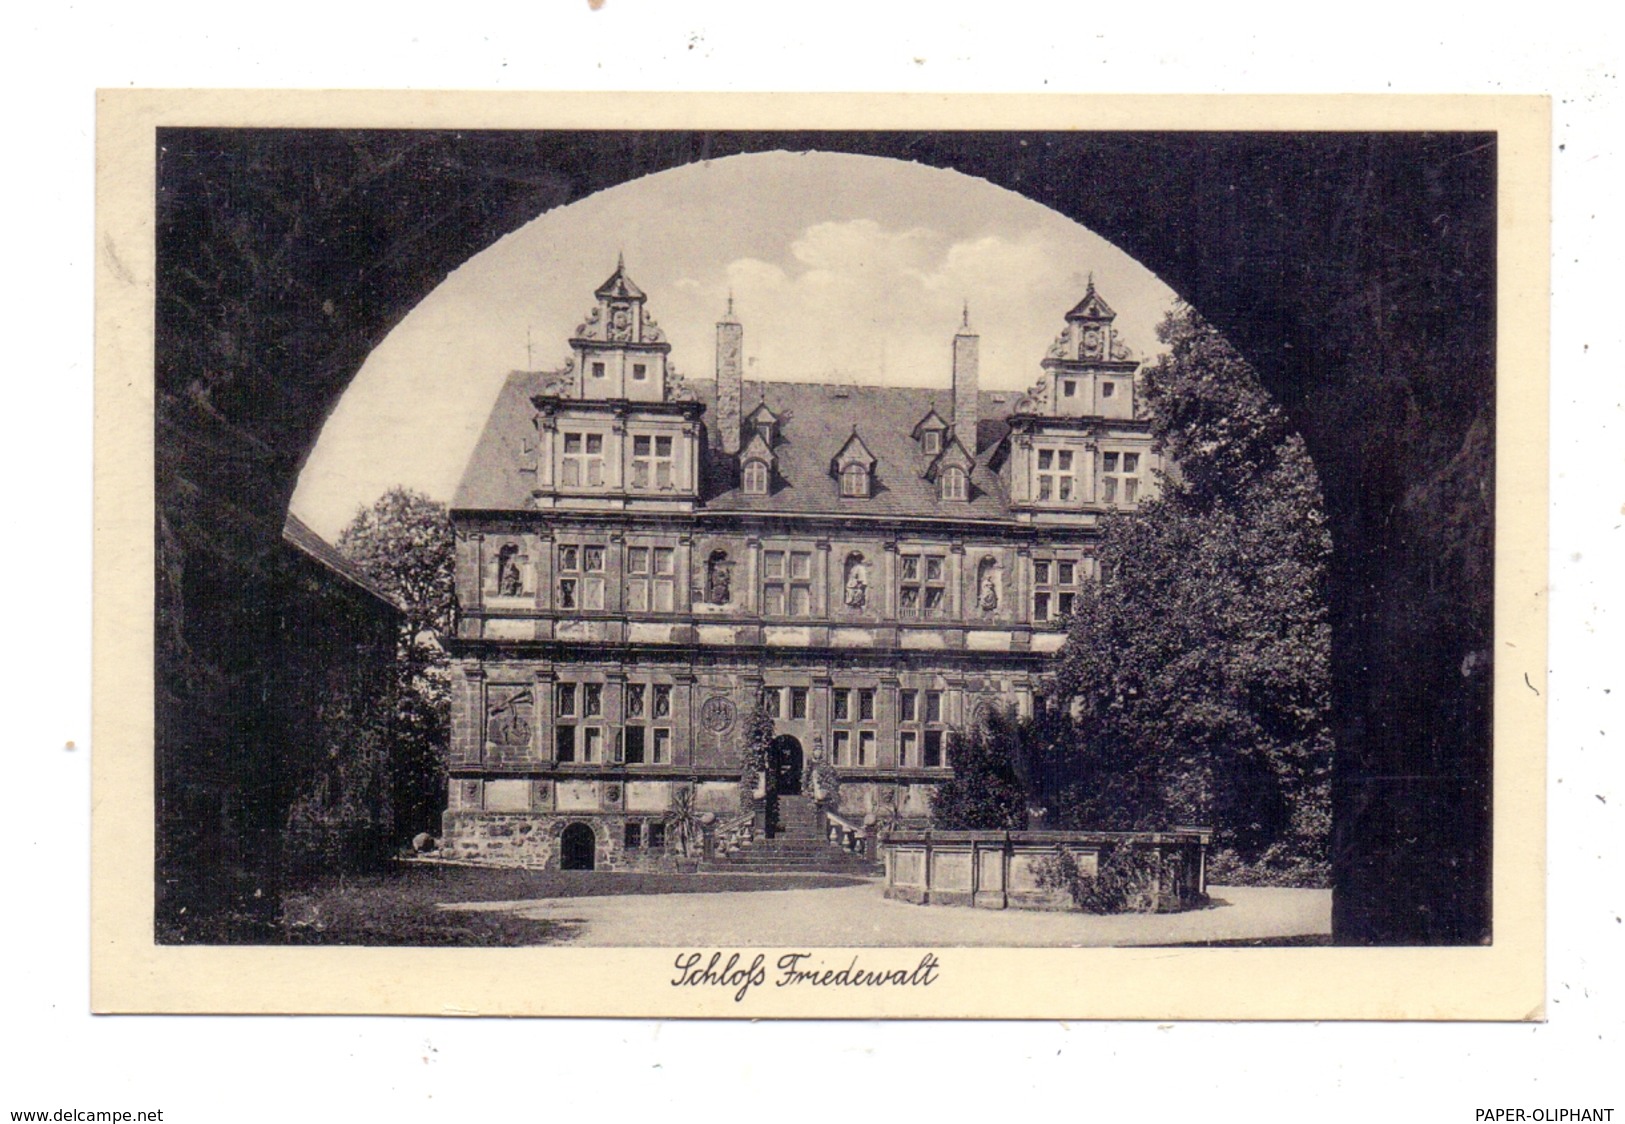 5244 DAADEN - FRIEDEWALD, NSLB Schulungsburg Hans Schemm, Landpoststempel "Friedewald über Betzdorf", 1937 - Altenkirchen